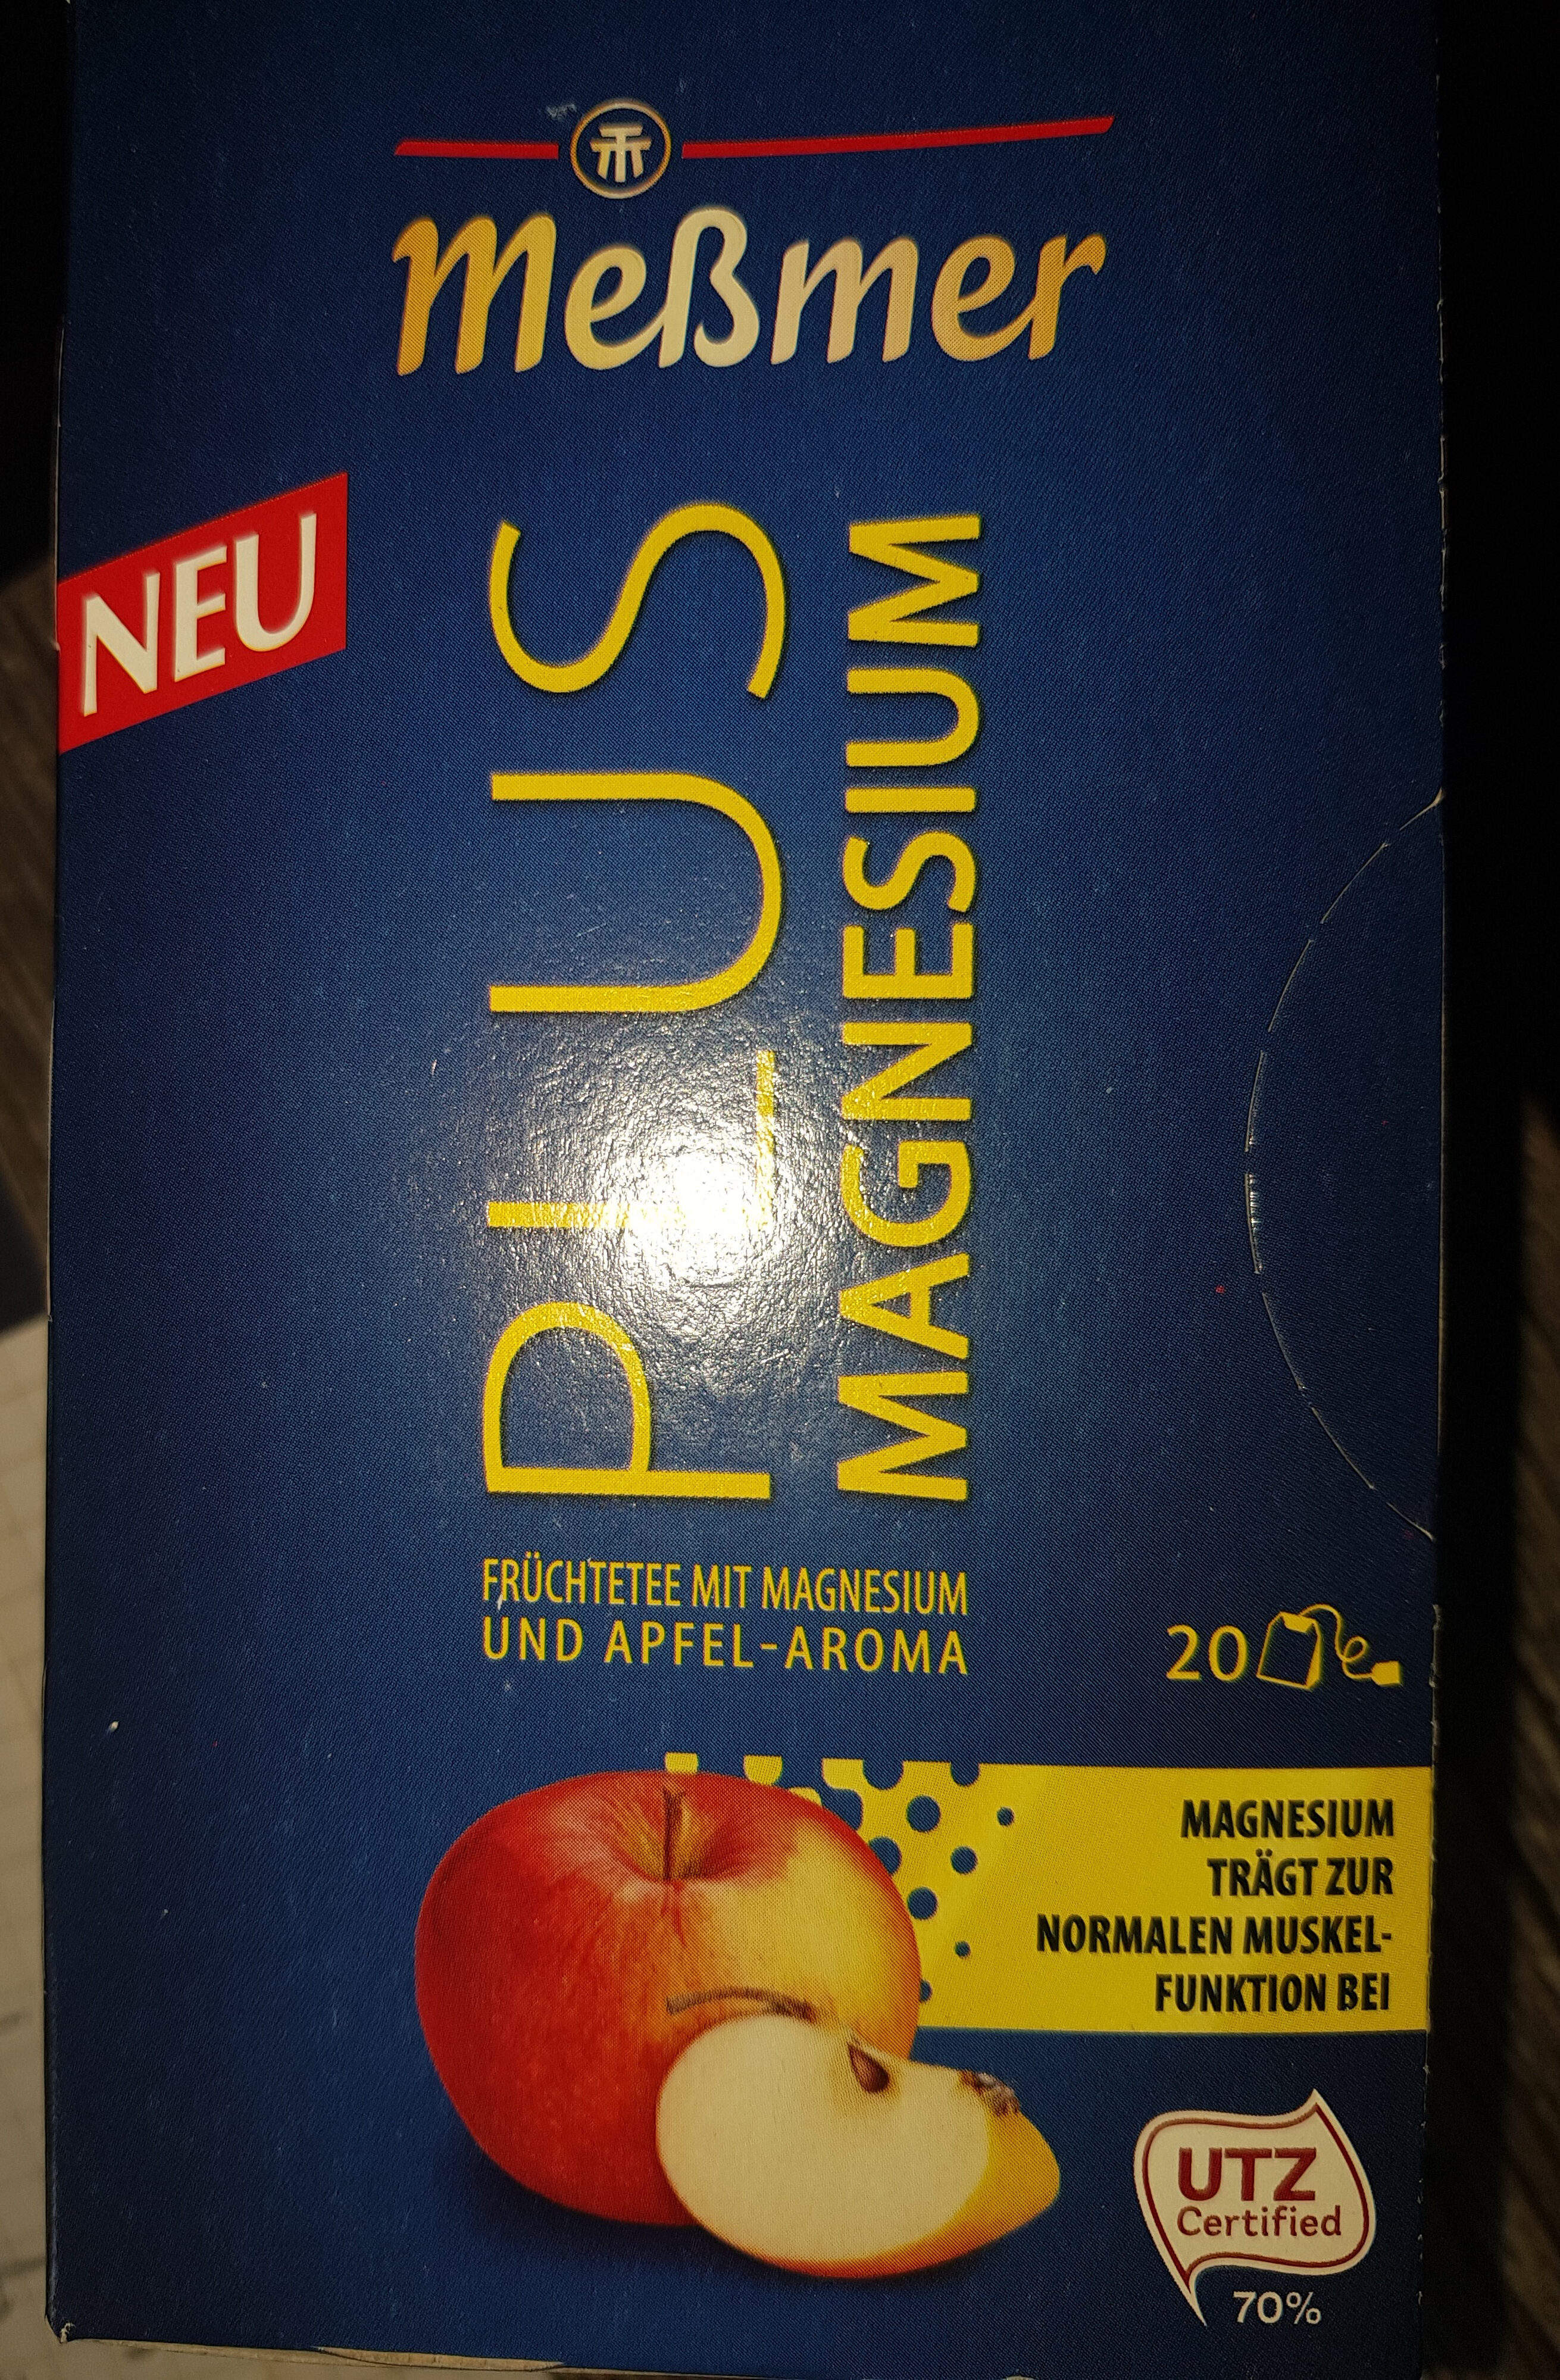 Plus Magnesium - Produkt